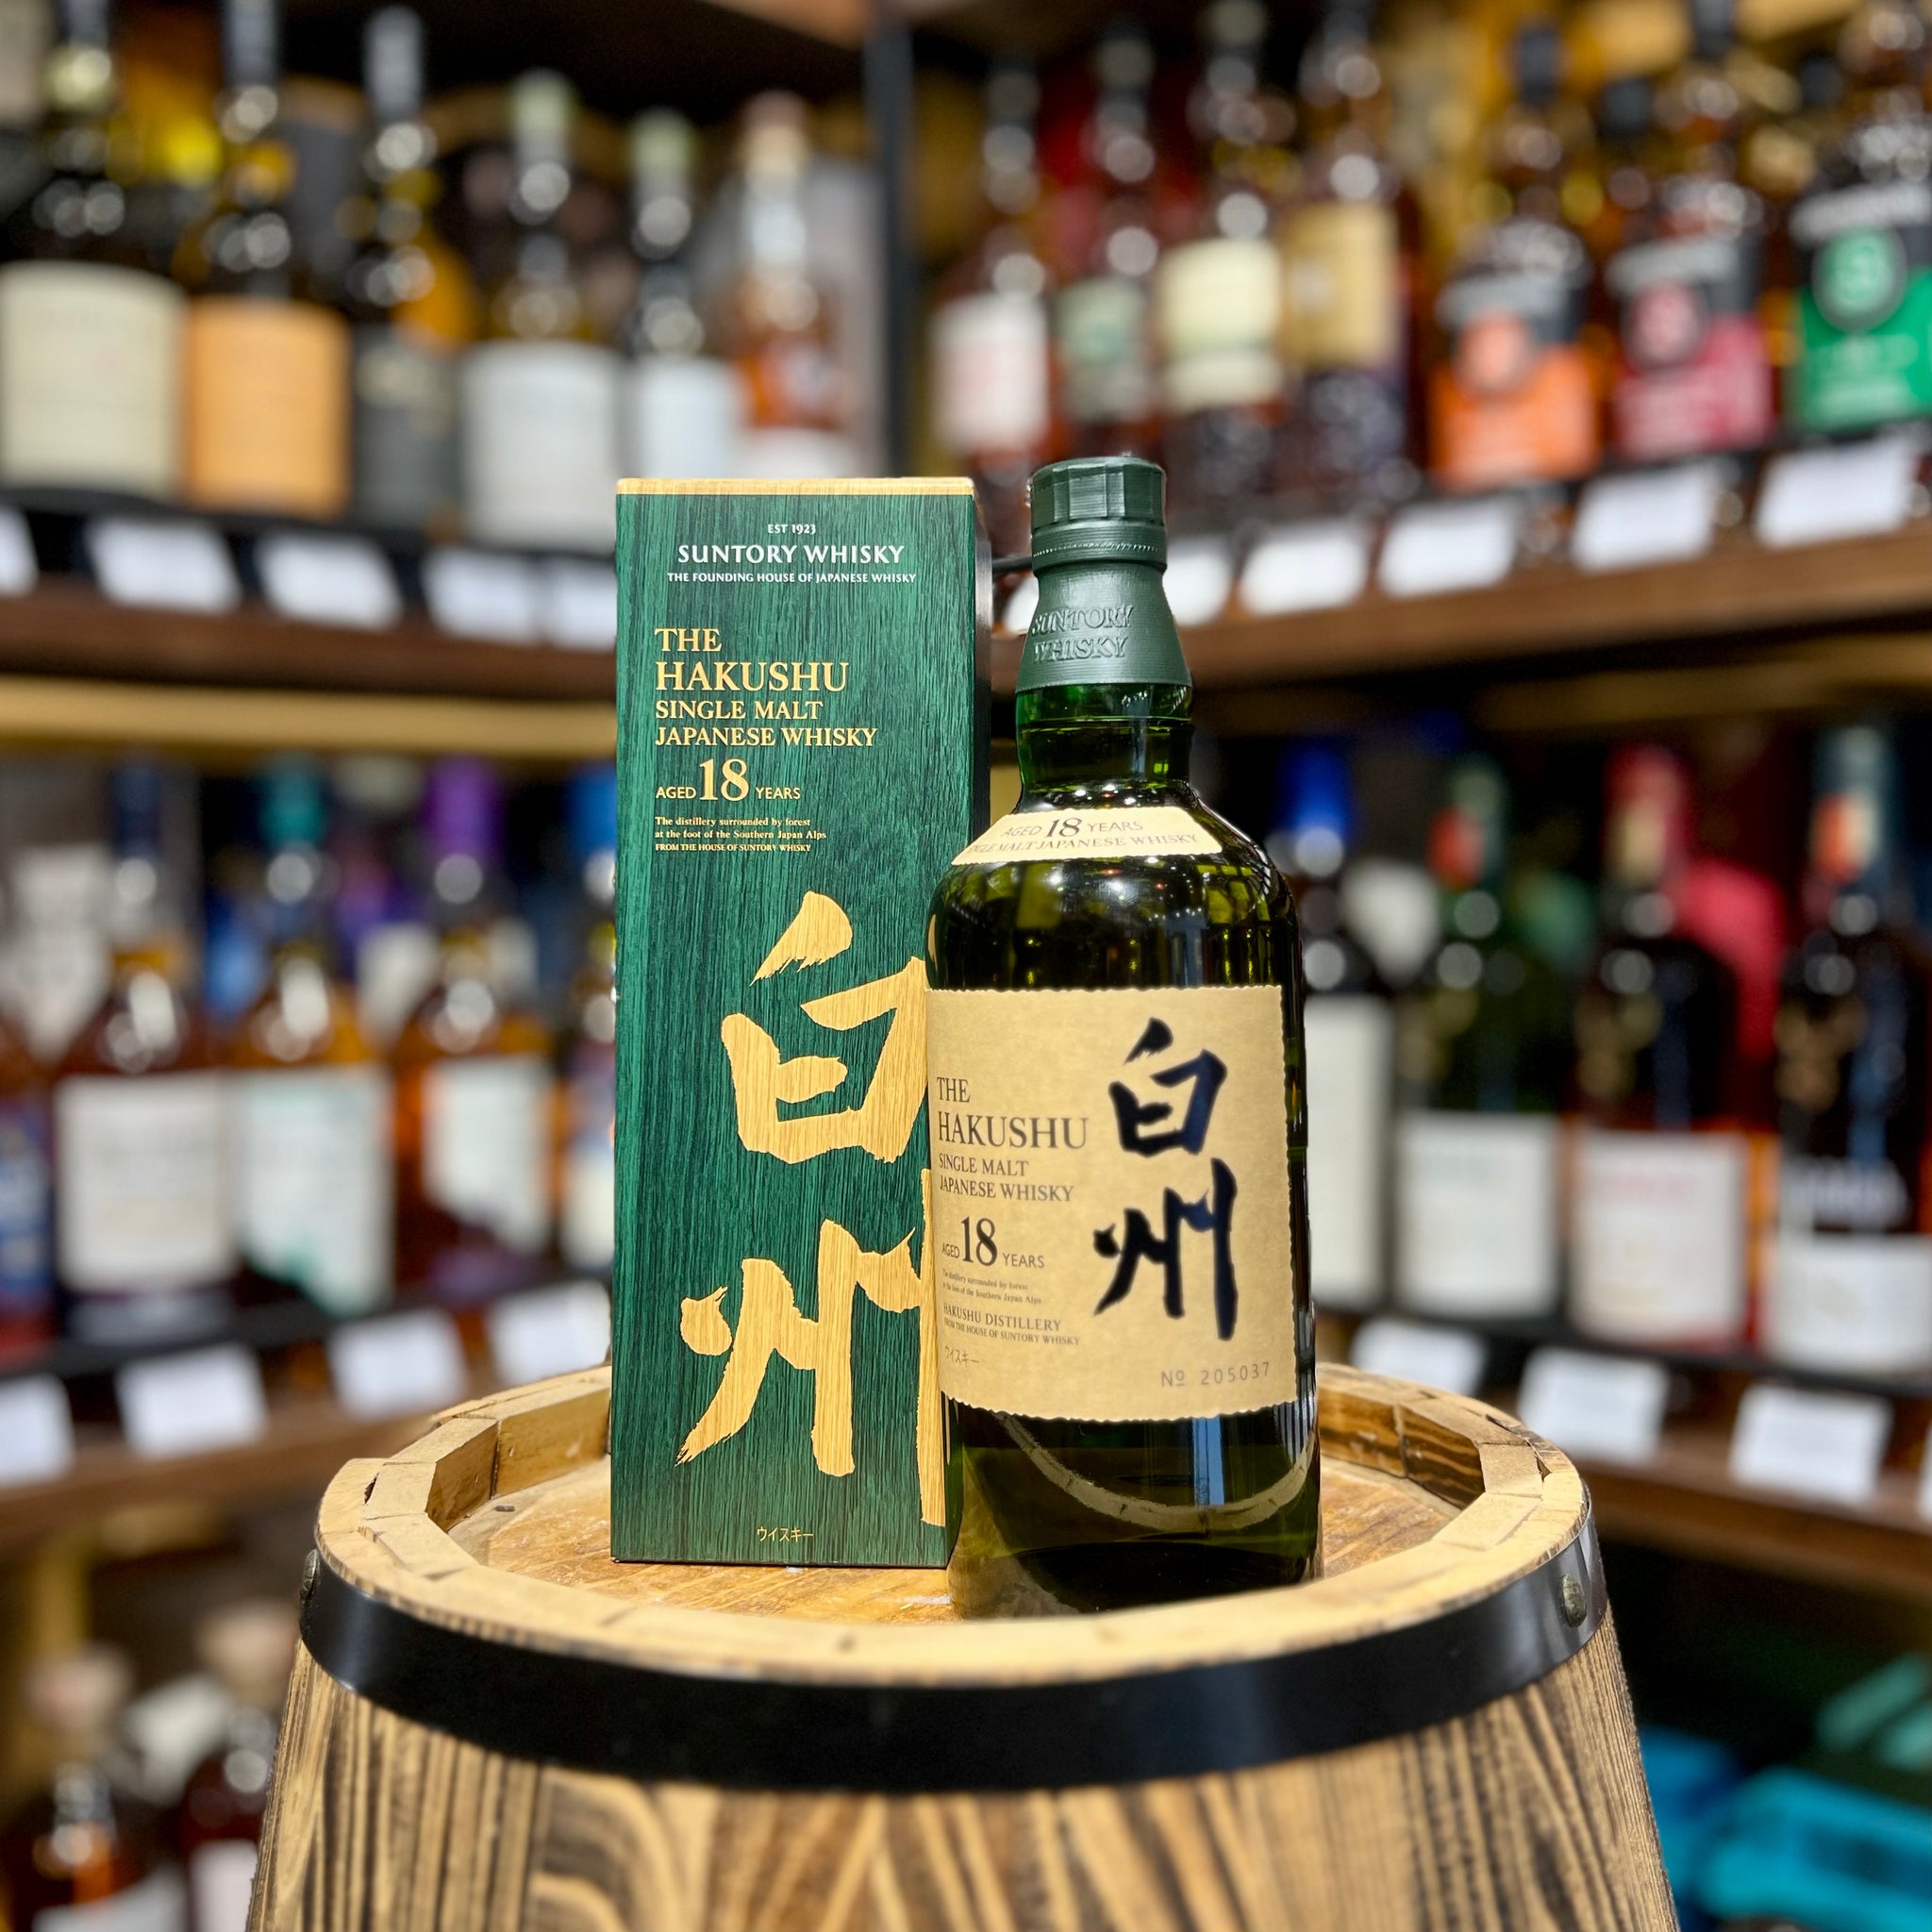 Hakushu 18 Year Old Single Malt Japanese Whisky